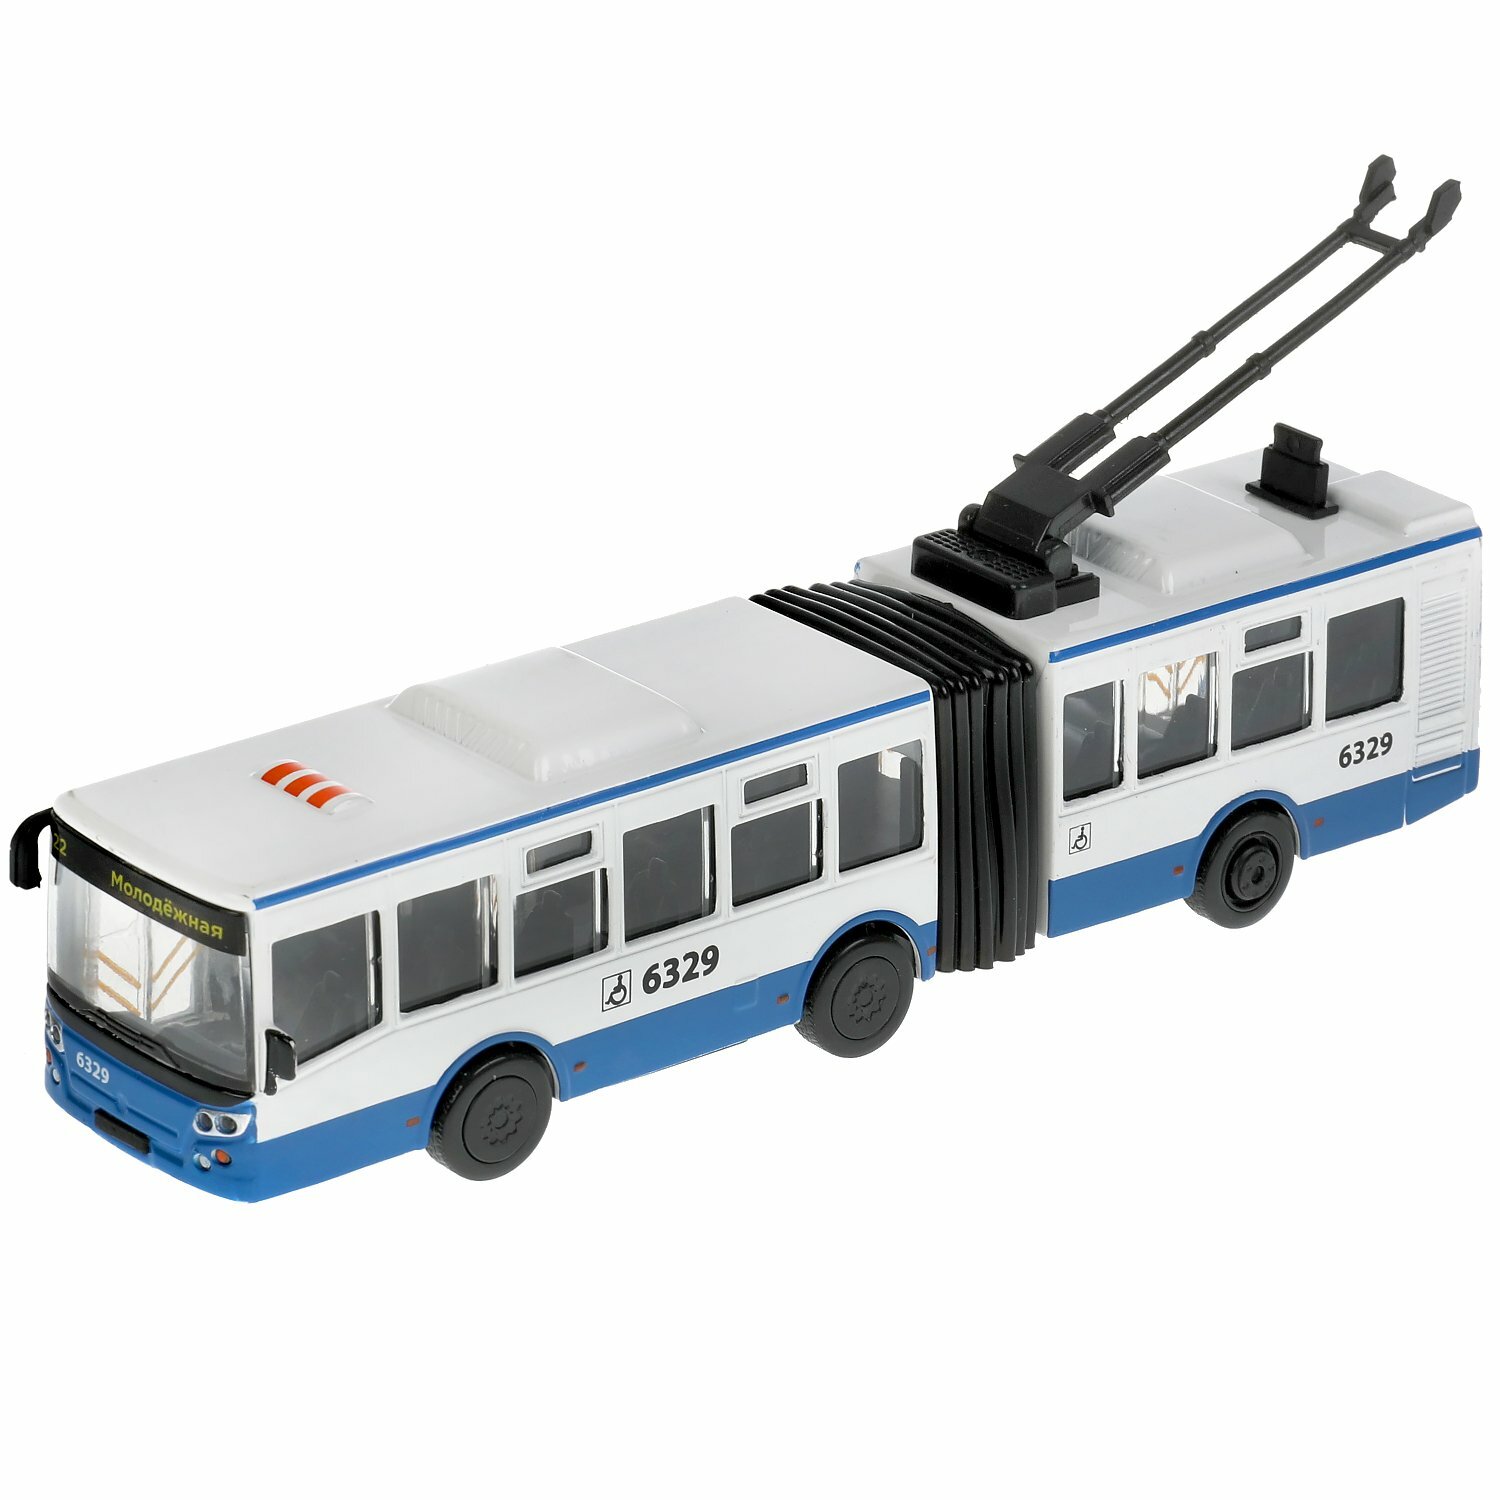 Троллейбус Технопарк сочлененный, бело-синий, инерционный ТRОLLRUВ-19-ВUWН